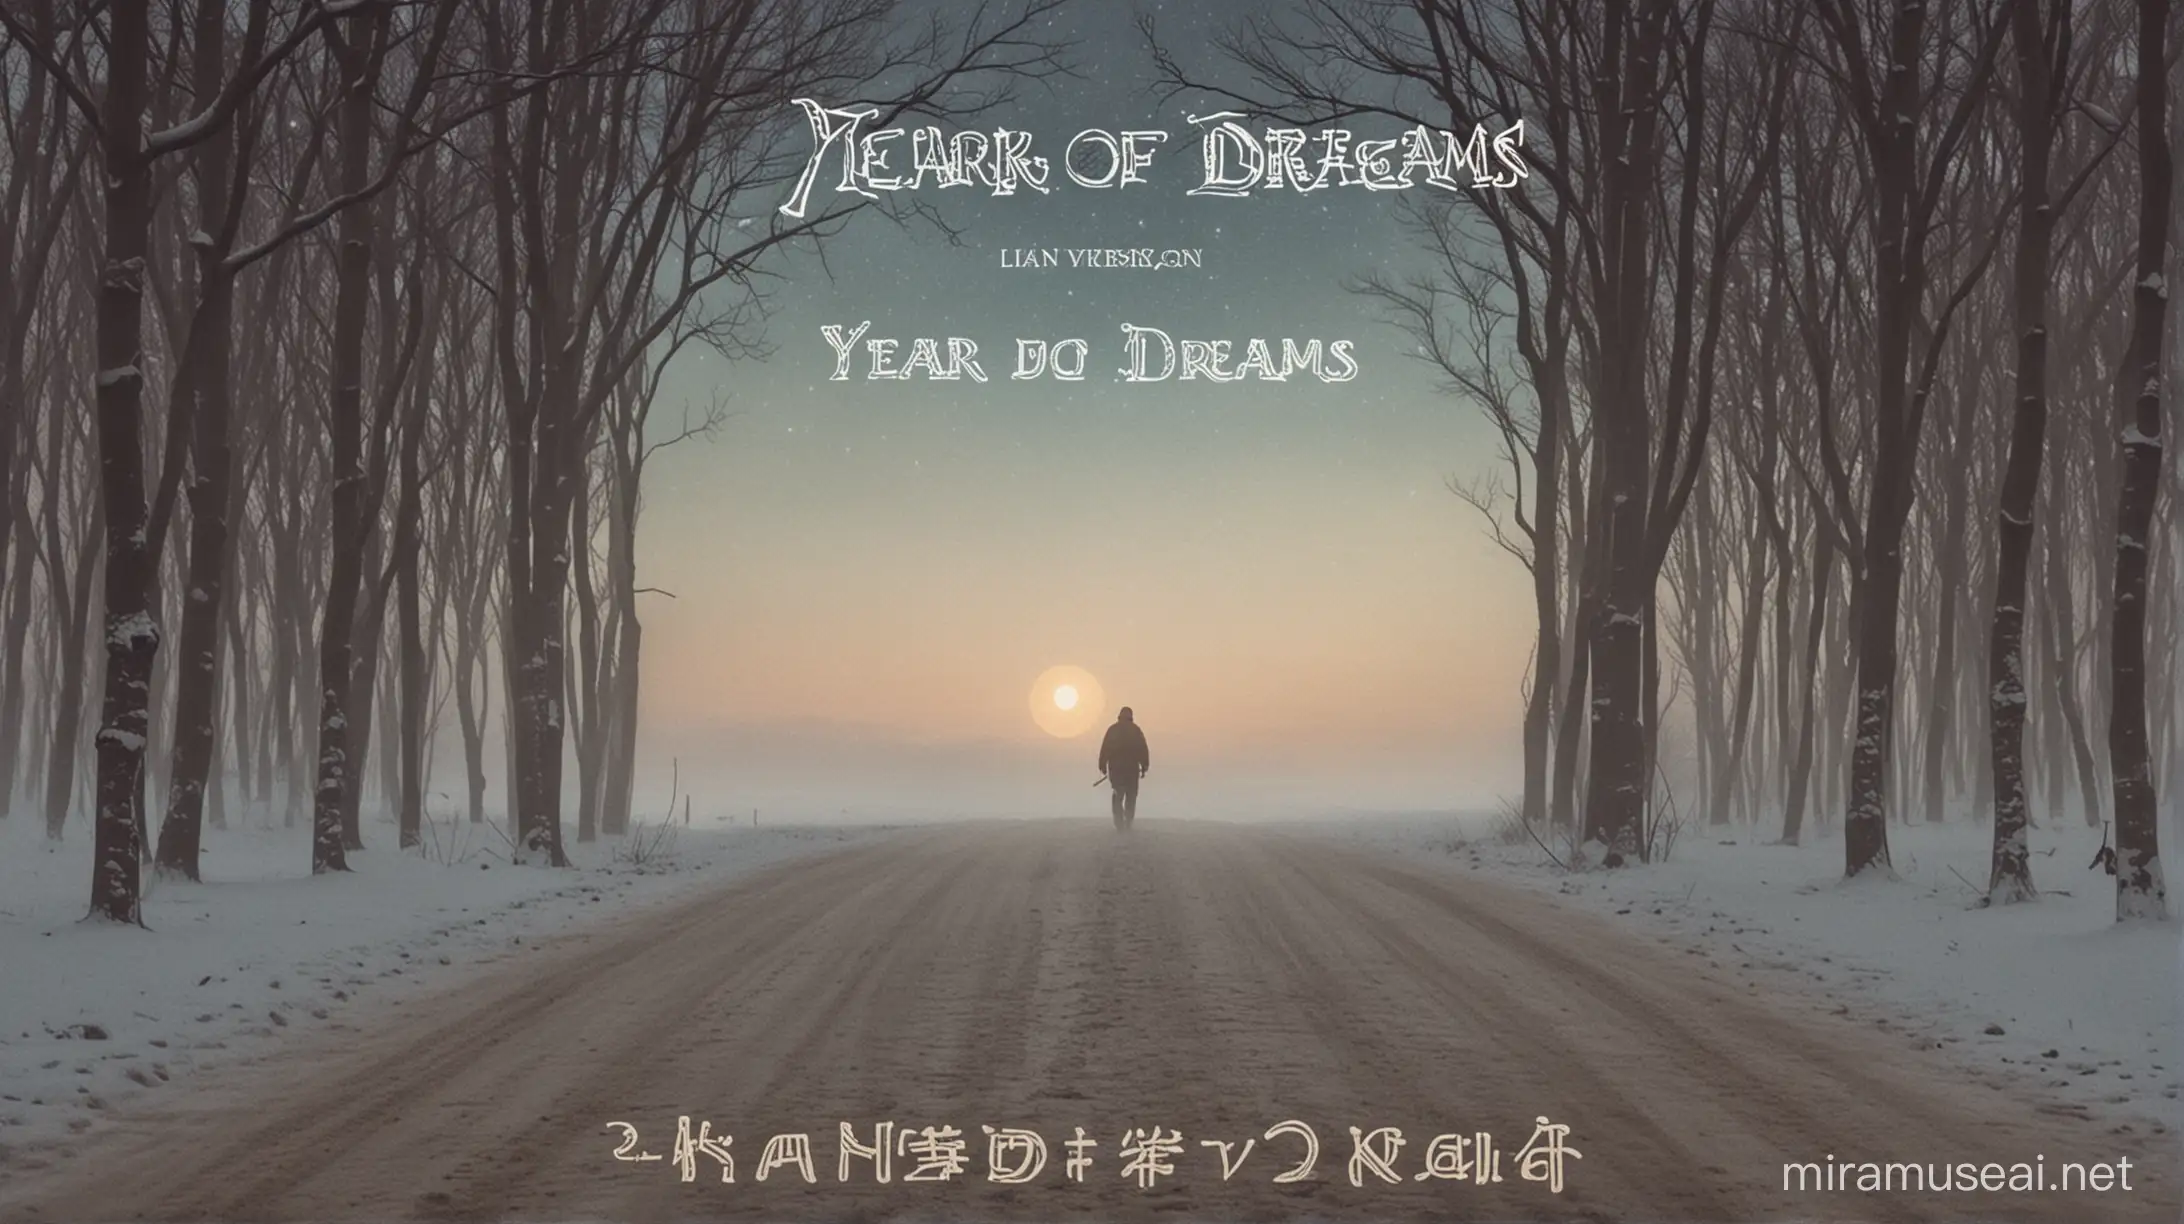 Постер к треку "Year of Dreams"